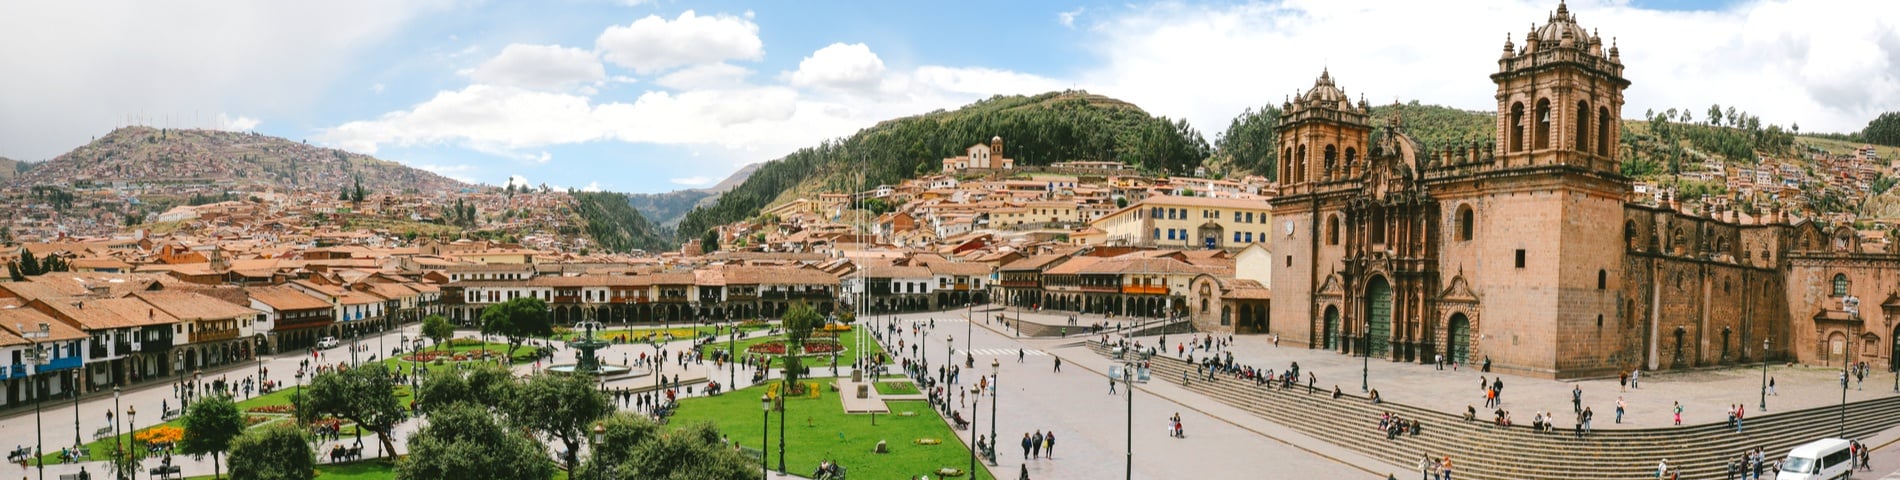 กุสโก (Cuzco)